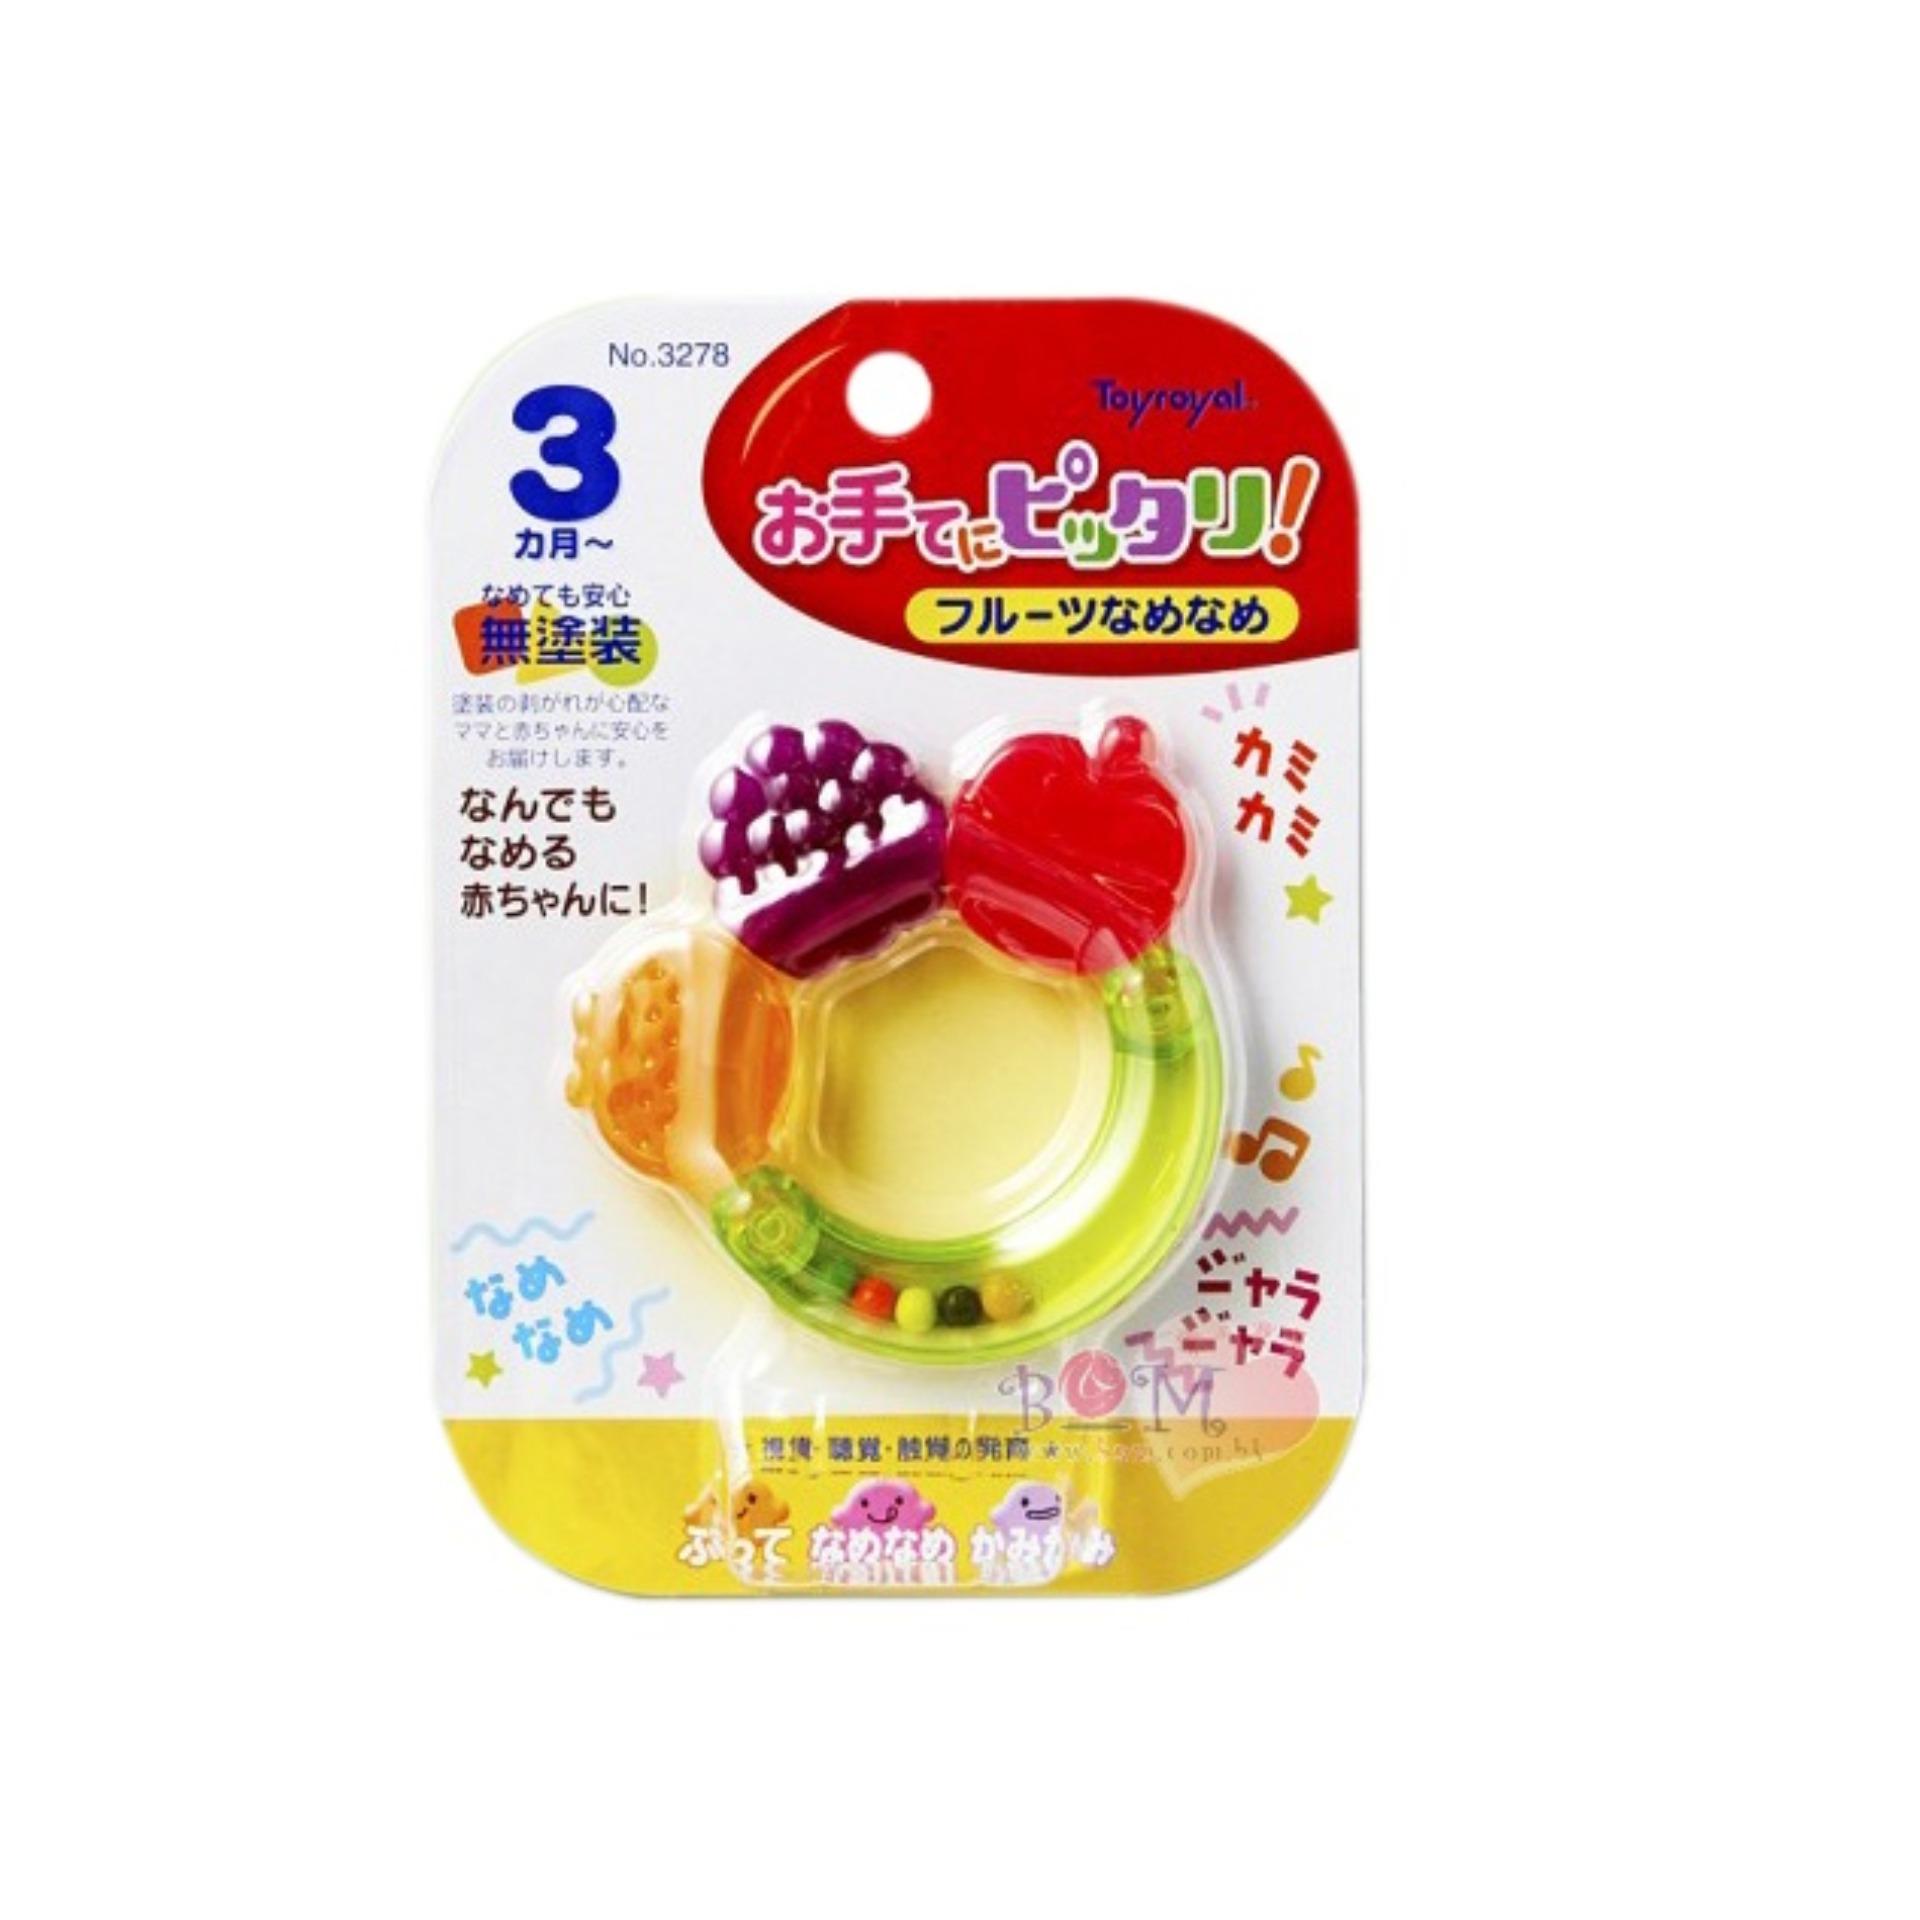 Miếng cắn răng hoa quả Toyroyal 113325 (Nhiều màu)